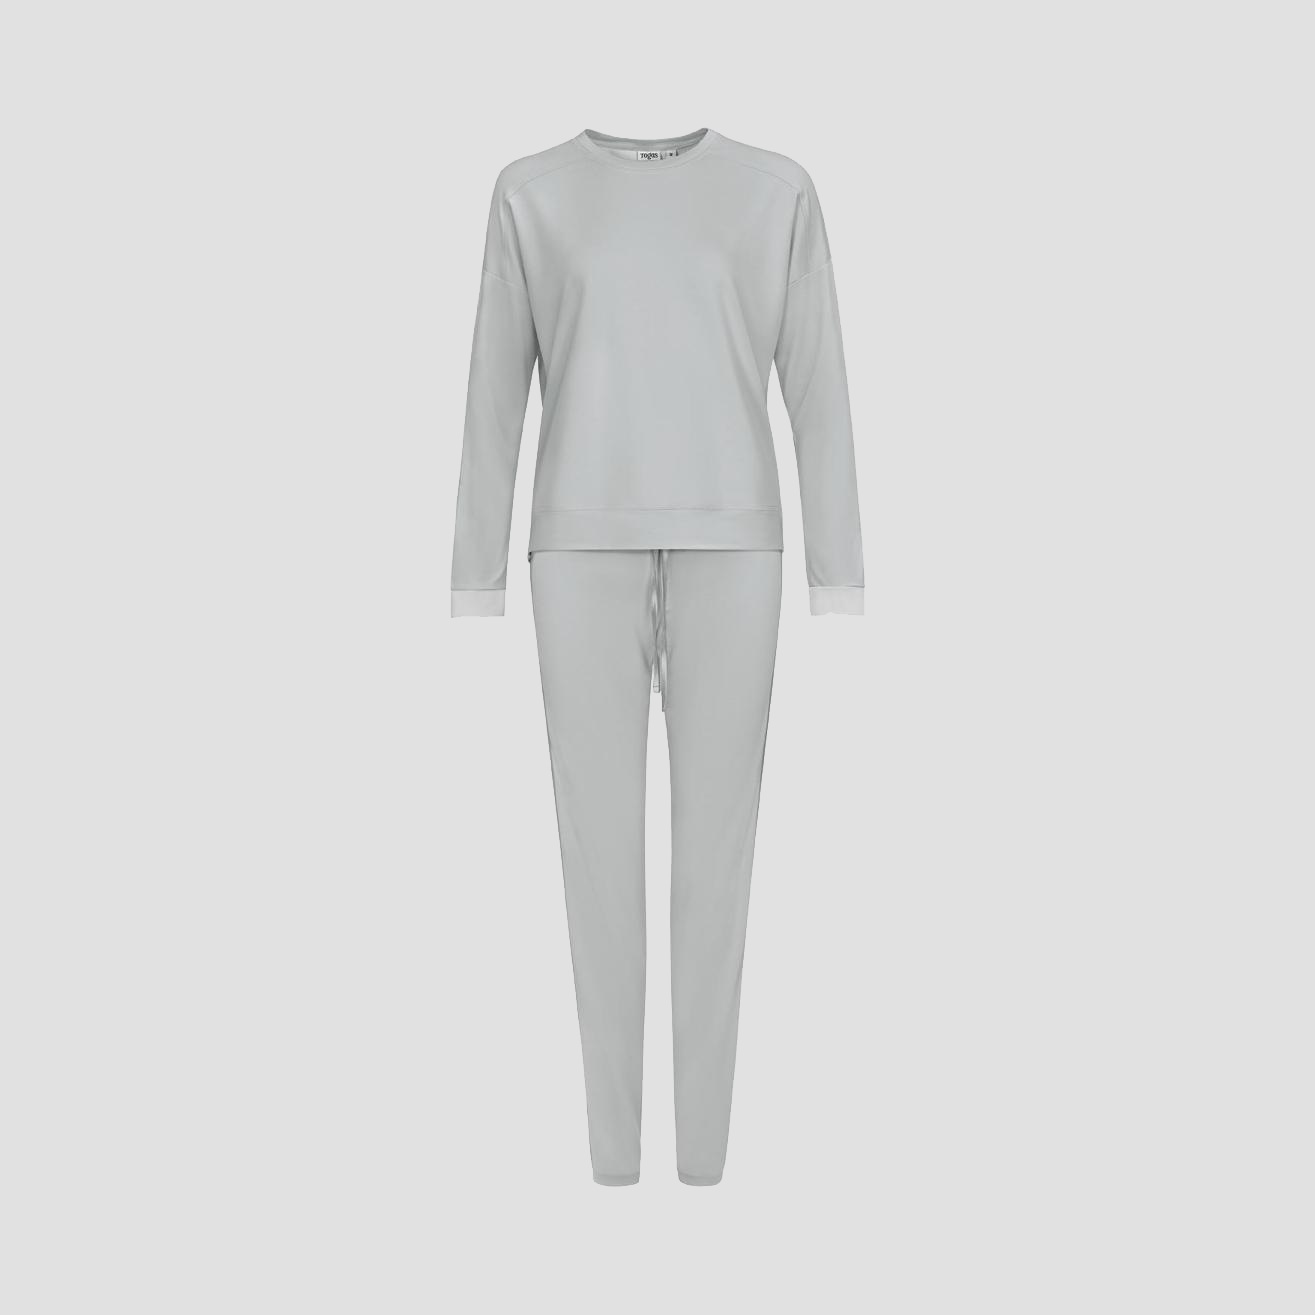 Пижама Togas Рене серая женская M/46, цвет серый, размер 46